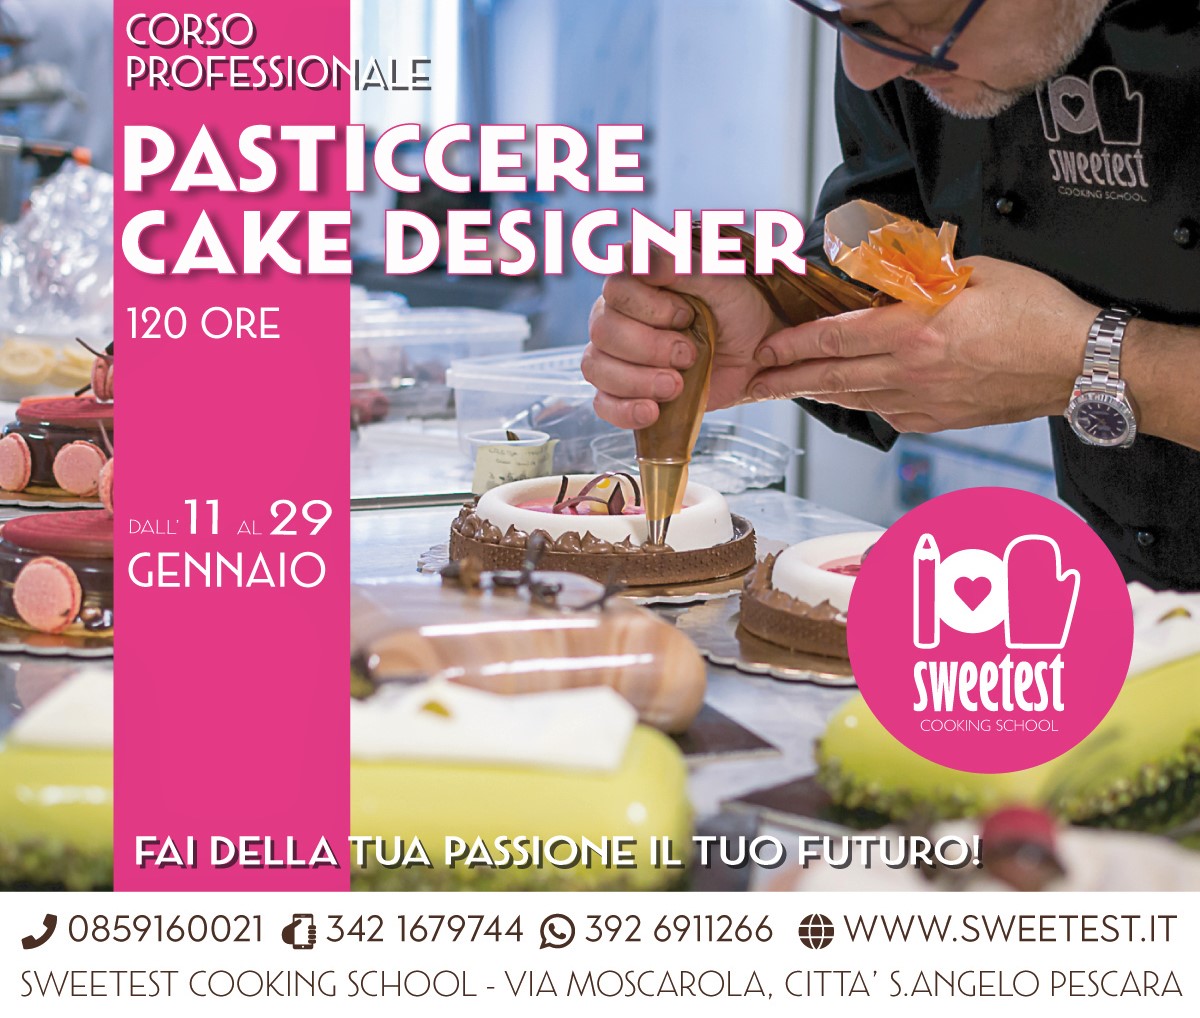 Corsi di pasticceria e cake design Sweetest – Approfondimenti in pasticceria  – INTEGRAZIONE corso professionale Pasticcere Decoratore (cake designer)-  9/13 marzo 2020